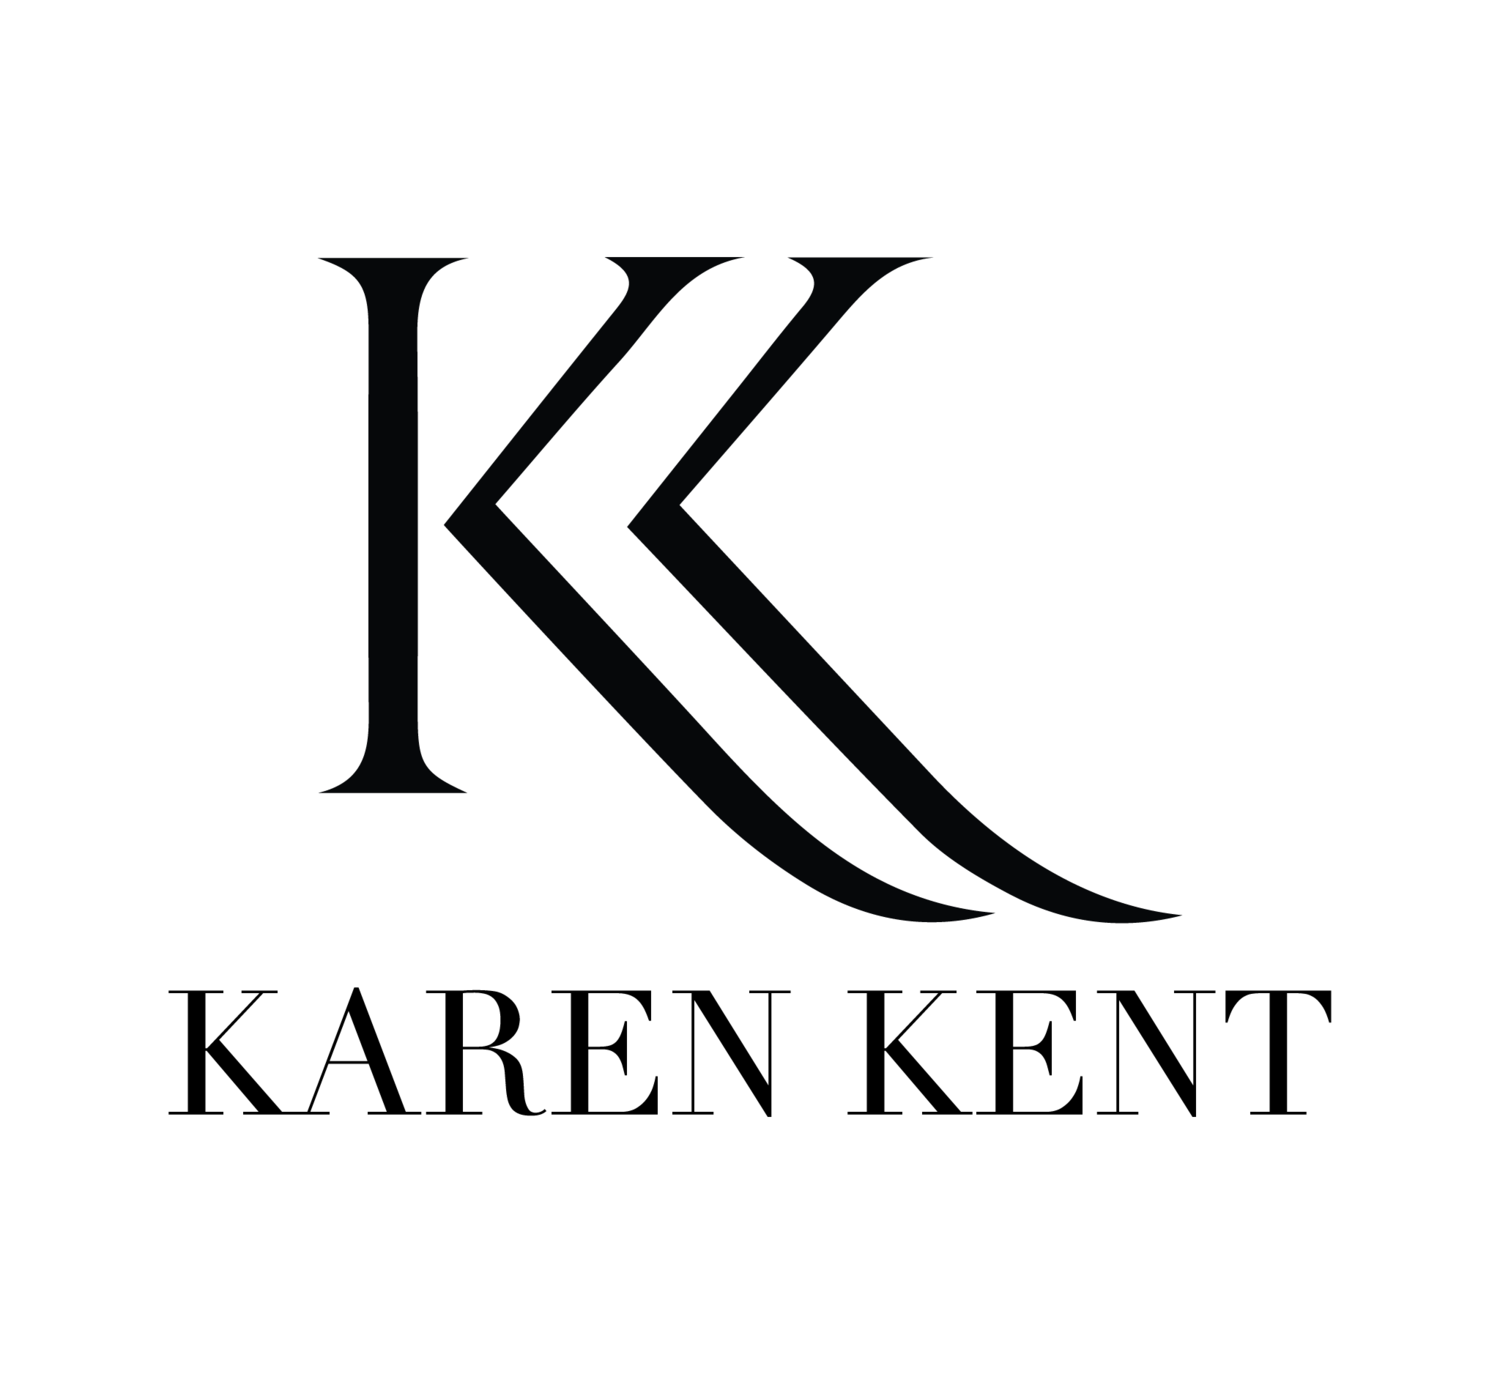 Karen Kent